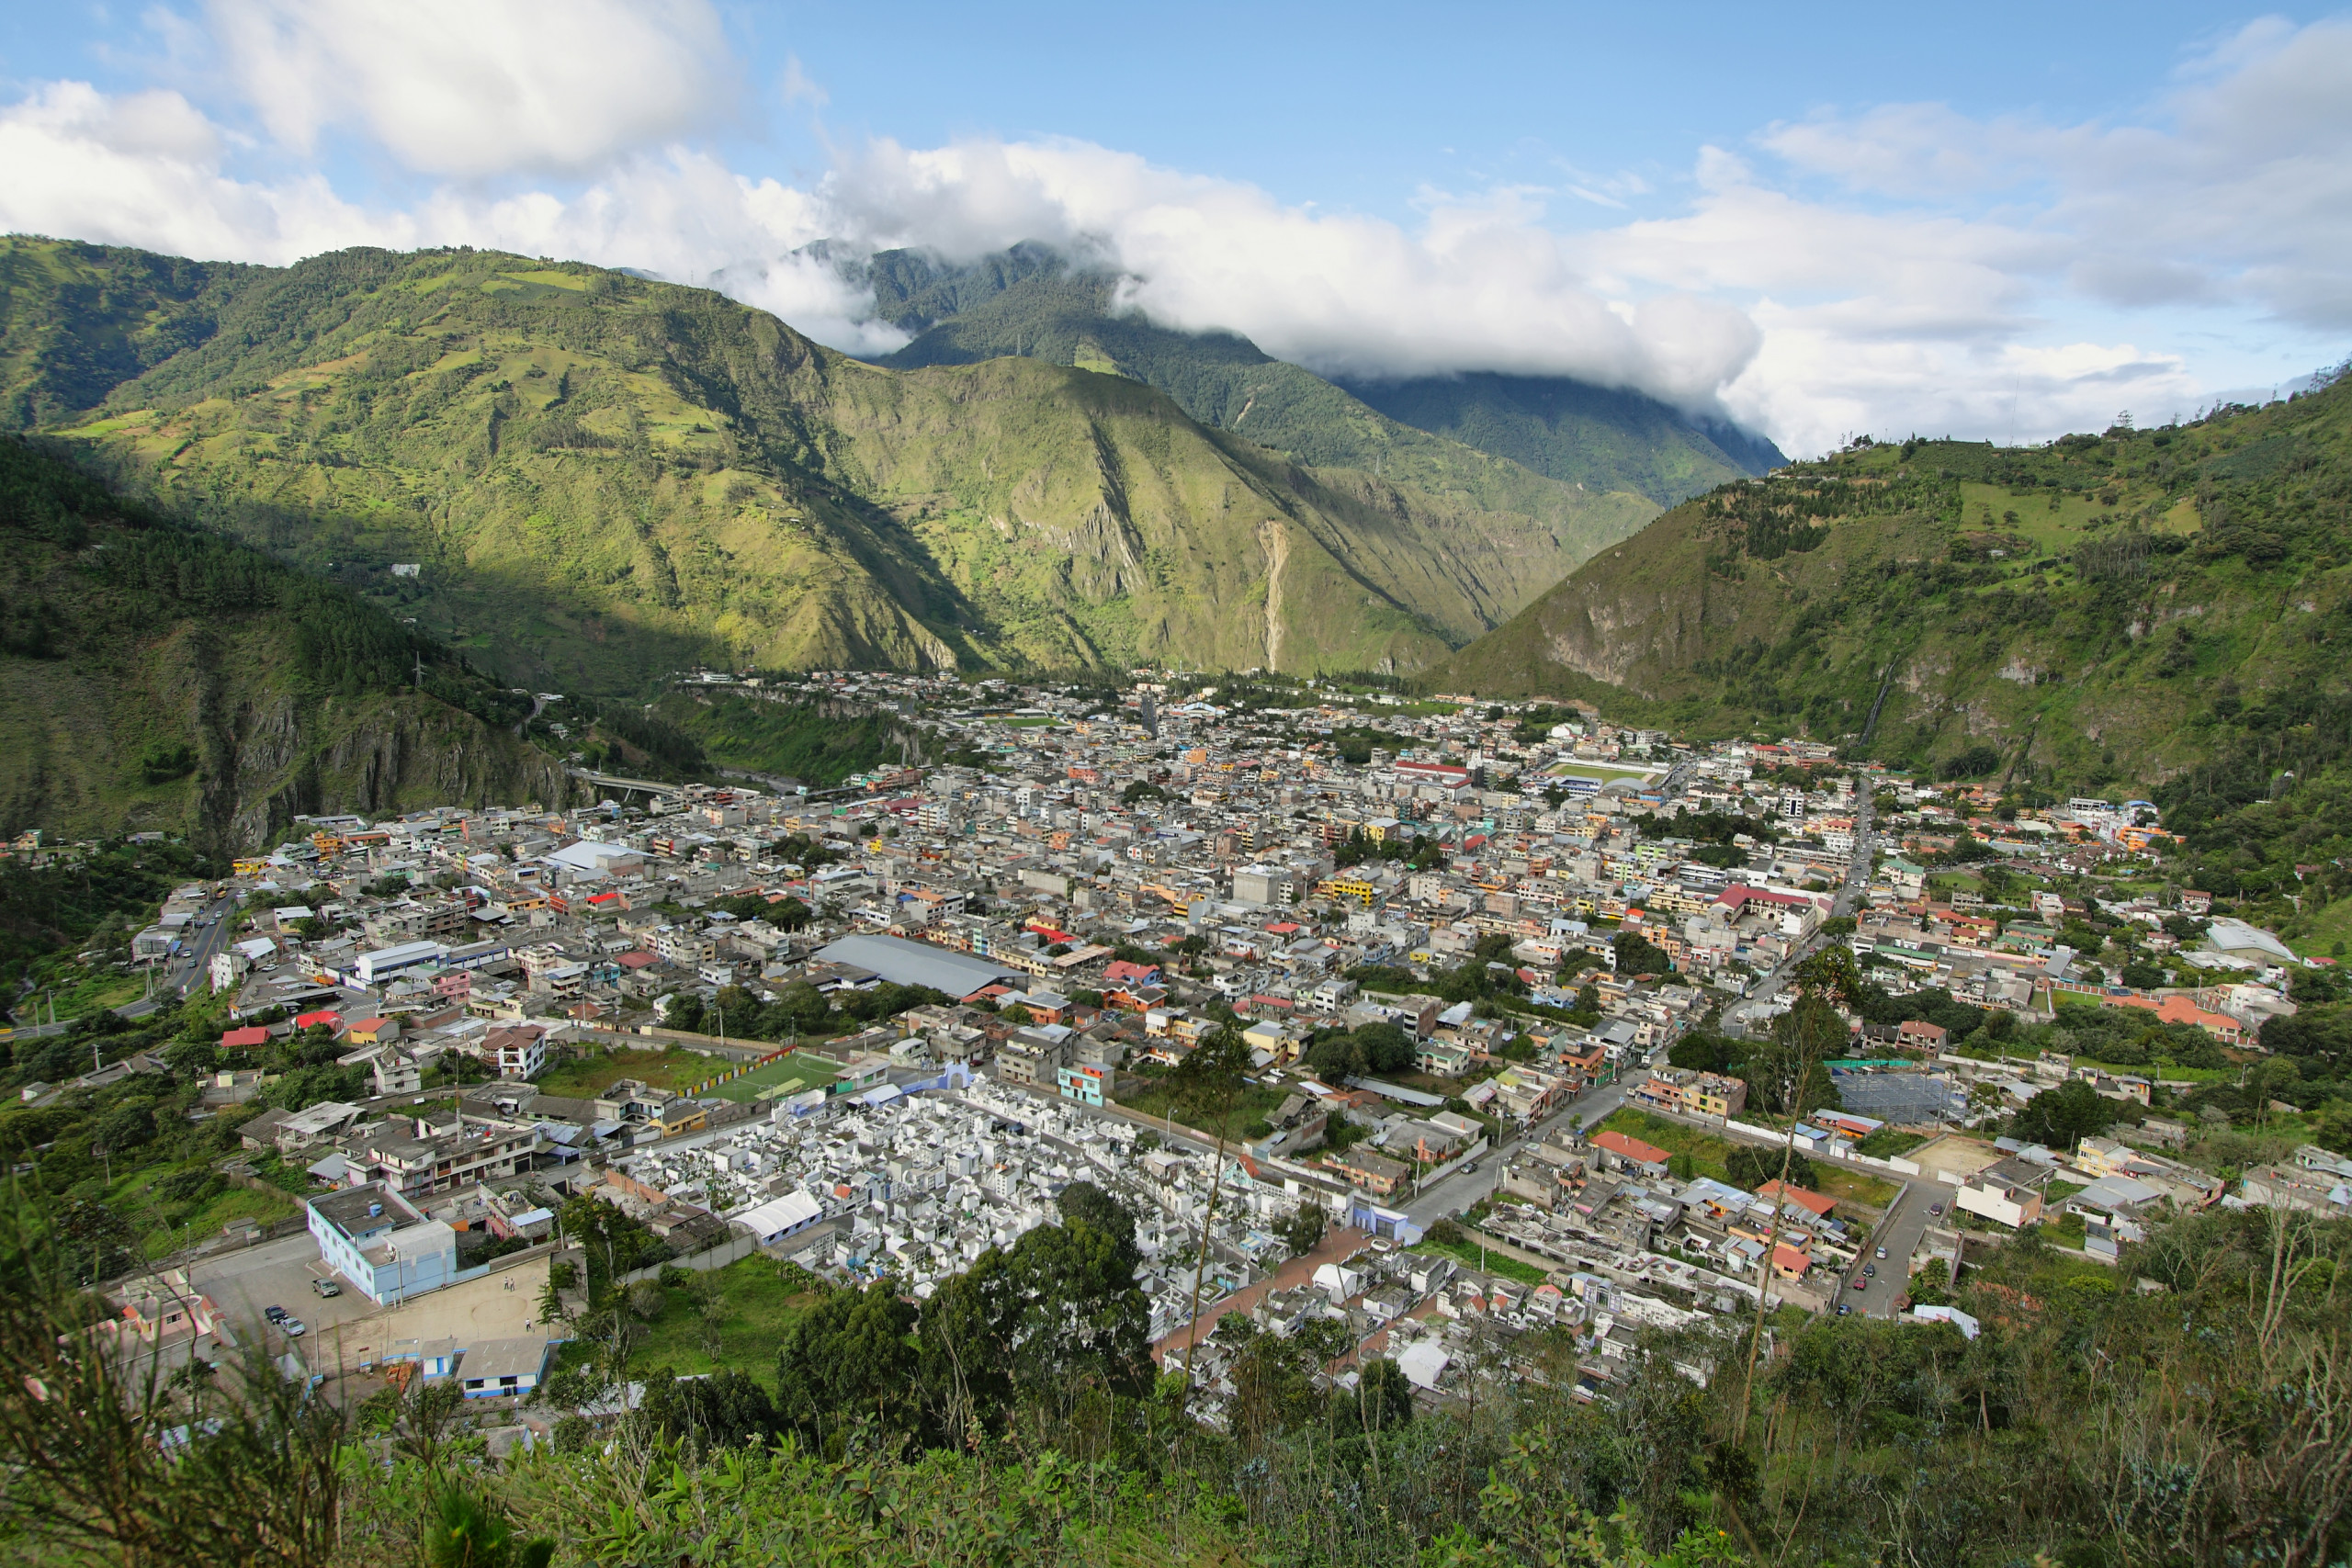 City of Banos, Ecuador. View from the Mirador de la Virgen lookout.